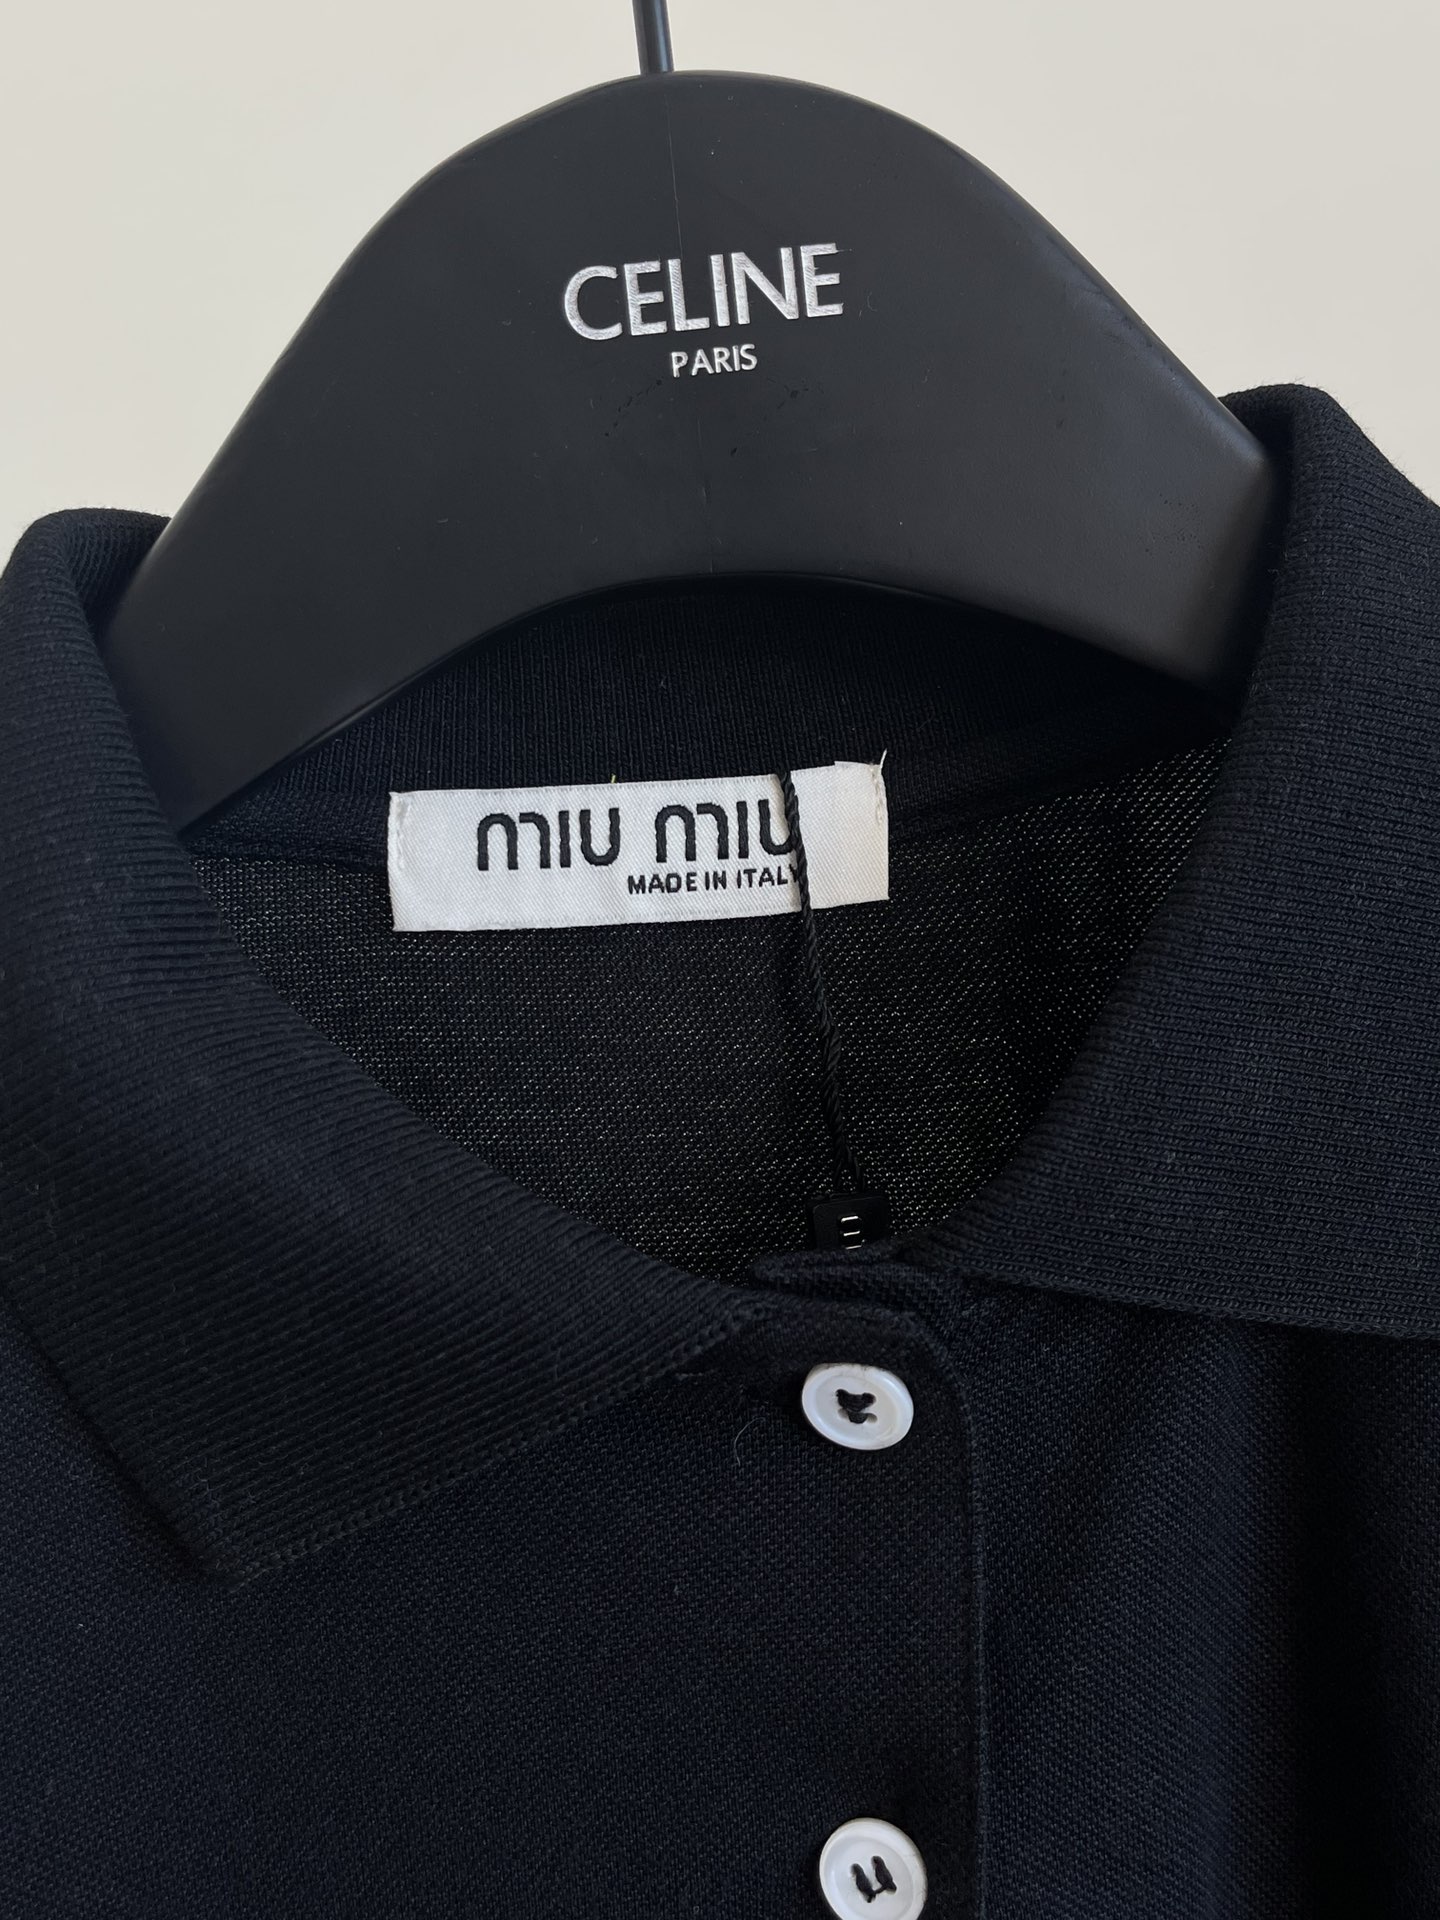 ミュウミュウに似たブランド激安通販 ポロシャツ トップス 半袖 シンプル 純綿 通気性いい ブラック_6